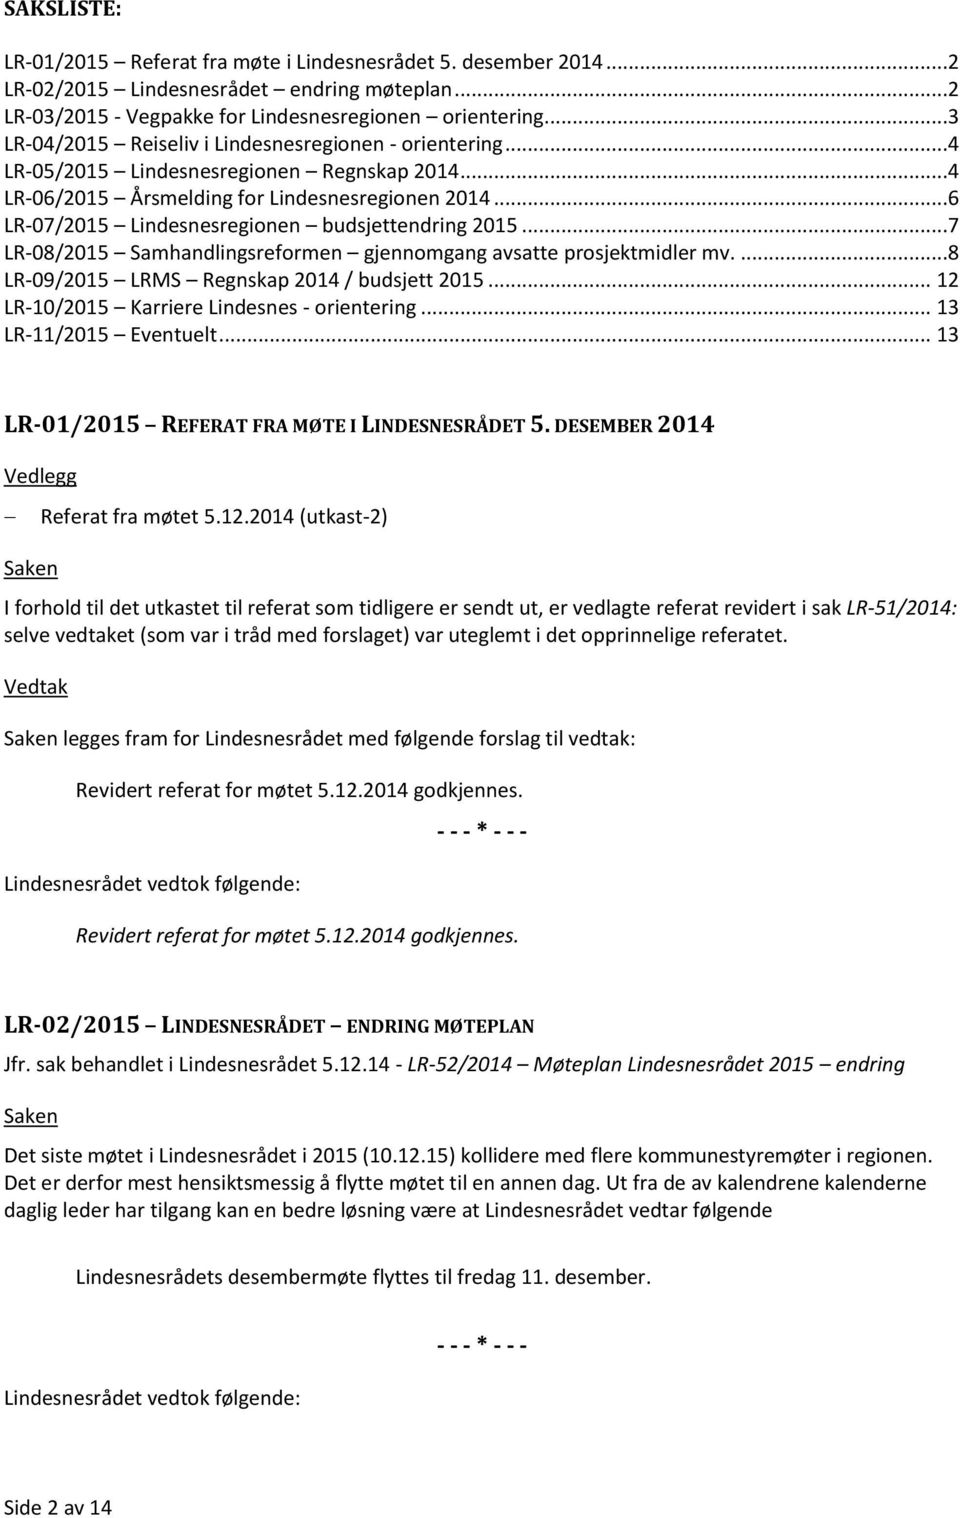 ..6 LR-07/2015 Lindesnesregionen budsjettendring 2015...7 LR-08/2015 Samhandlingsreformen gjennomgang avsatte prosjektmidler mv....8 LR-09/2015 LRMS Regnskap 2014 / budsjett 2015.